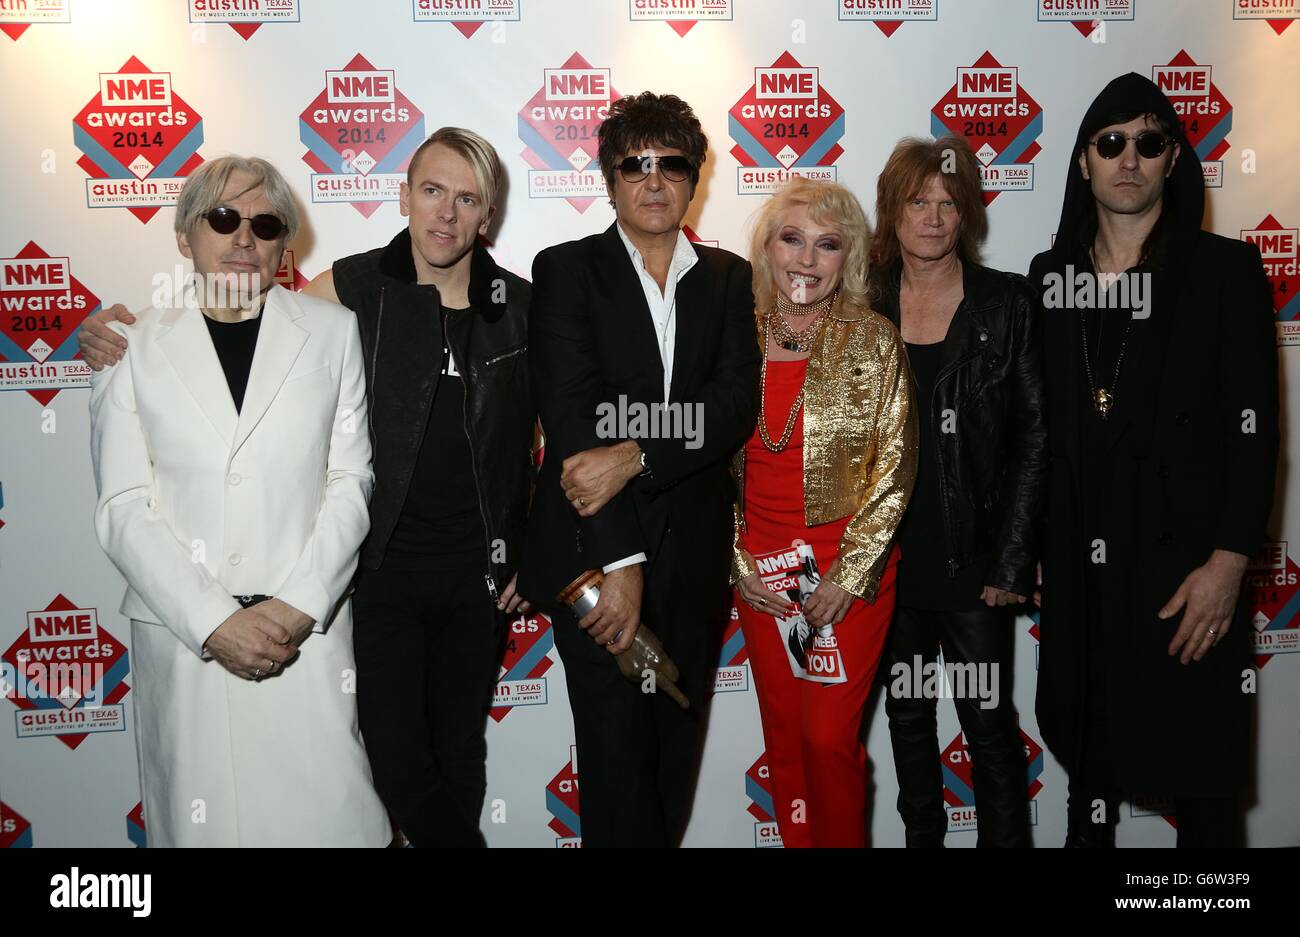 NME Awards 2014 - Arrivi - Londra. Blondie con Debbie Harry in arrivo per i NME Awards 2014, presso la Brixton Academy di Londra. Foto Stock